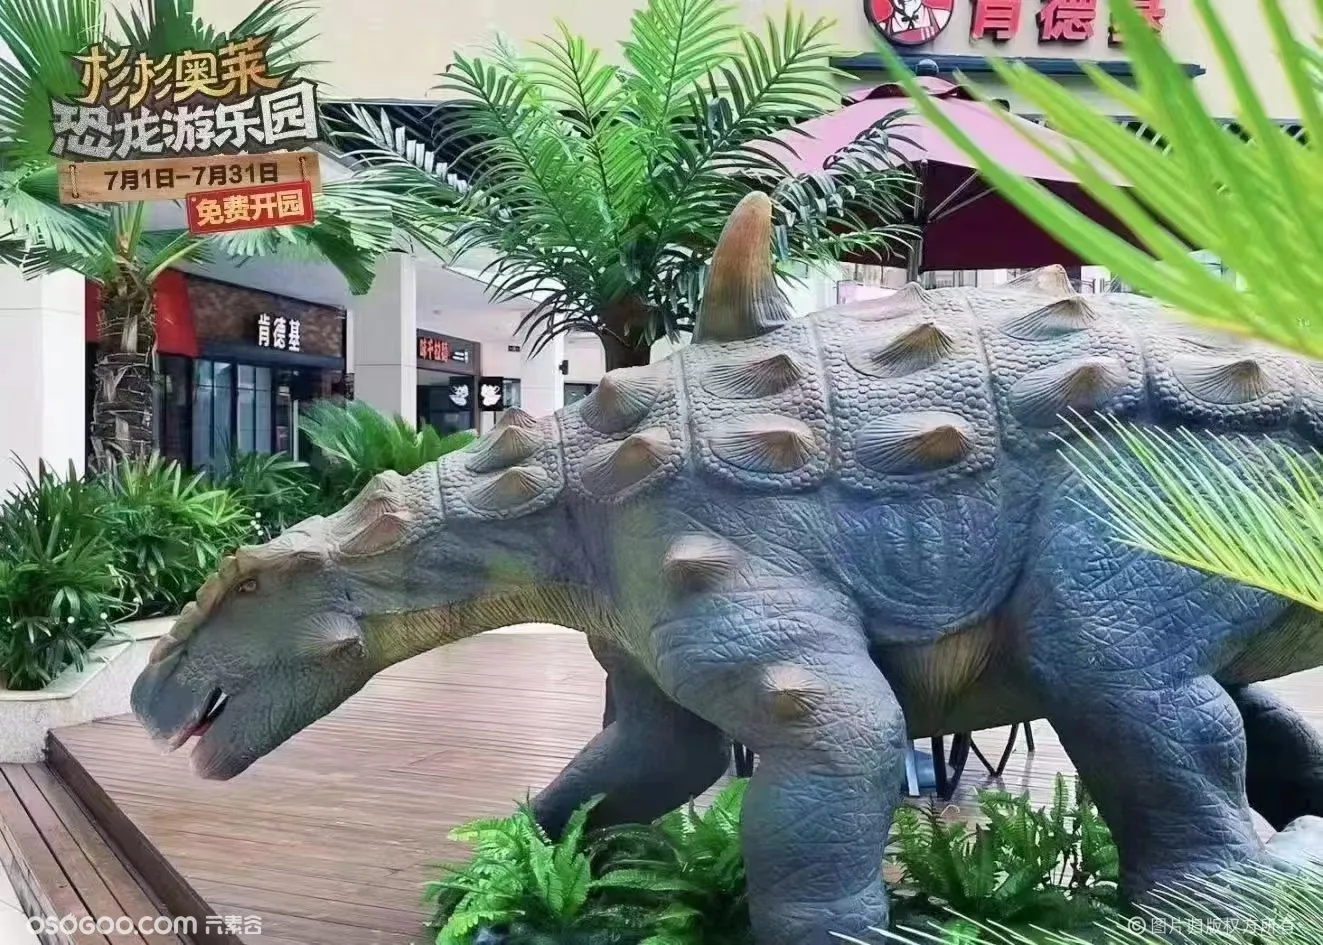 侏罗纪恐龙 大型恐龙展 仿真恐龙模型出租